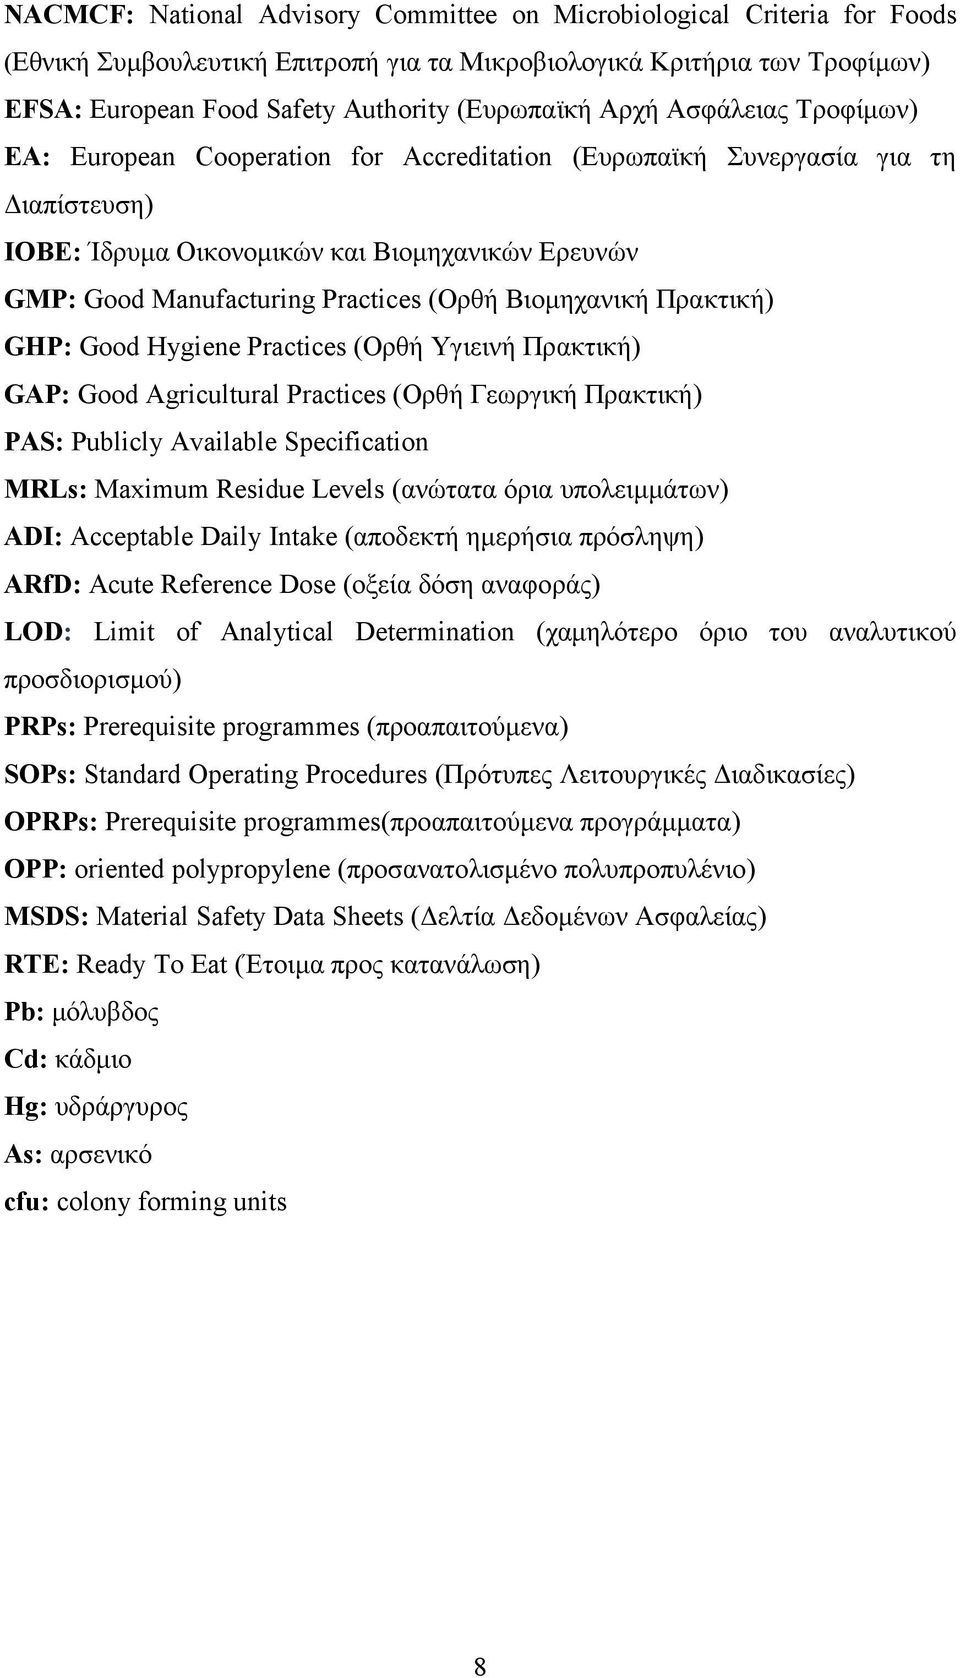 Βιομηχανική Πρακτική) GHP: Good Hygiene Practices (Ορθή Υγιεινή Πρακτική) GAP: Good Agricultural Practices (Ορθή Γεωργική Πρακτική) PAS: Publicly Available Specification MRLs: Maximum Residue Levels